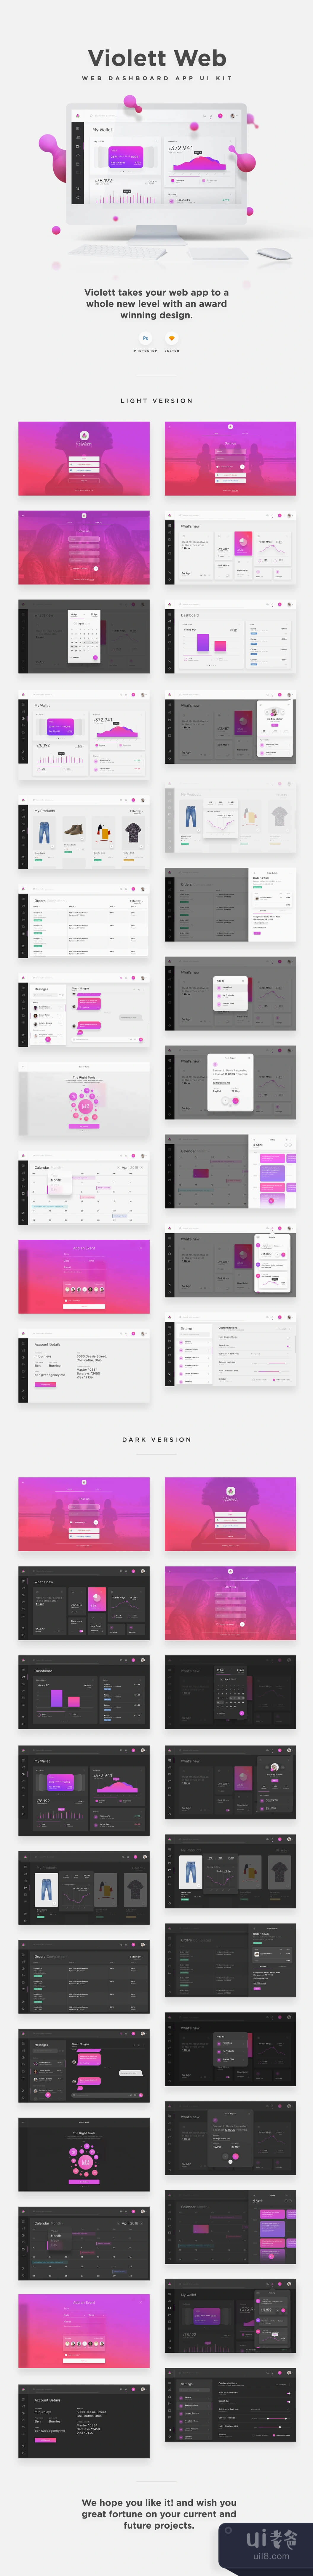 紫罗兰网页用户界面套件 (Violett Web UI Kit)插图1